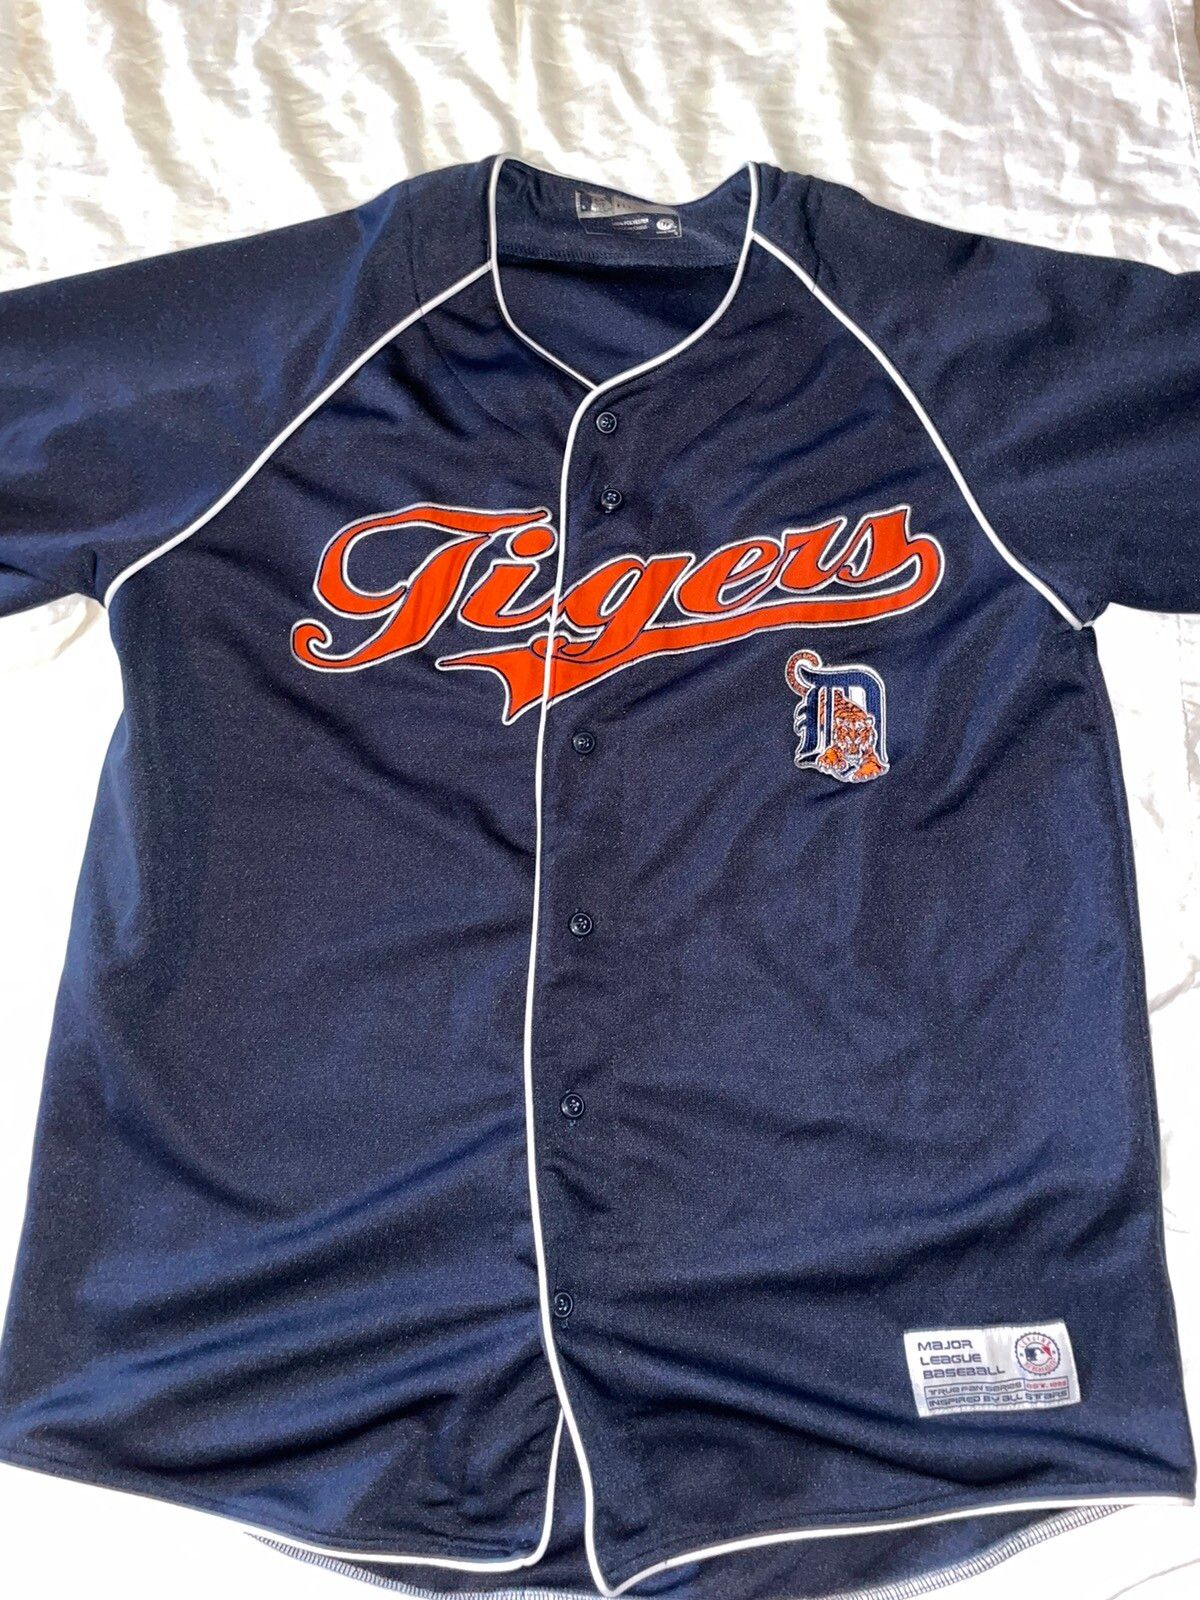 Genuine Merchandise By True Fan Vintage Detroit Tigers Jersey True Fan Size US L / EU 52-54 / 3 - 1 Preview